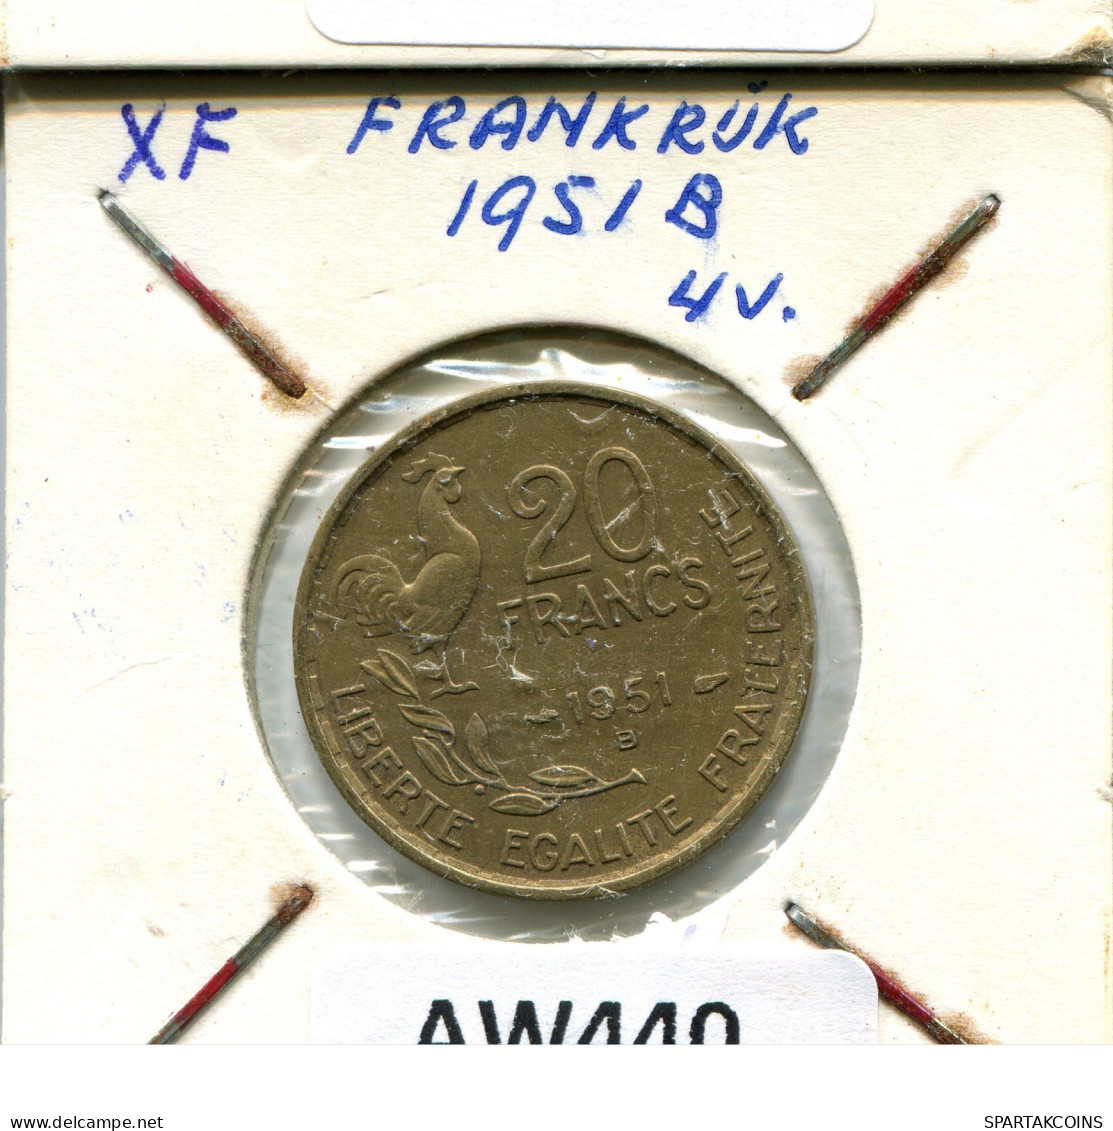 20 FRANCS 1951 B FRANKREICH FRANCE Französisch Münze #AW440.D.A - 20 Francs